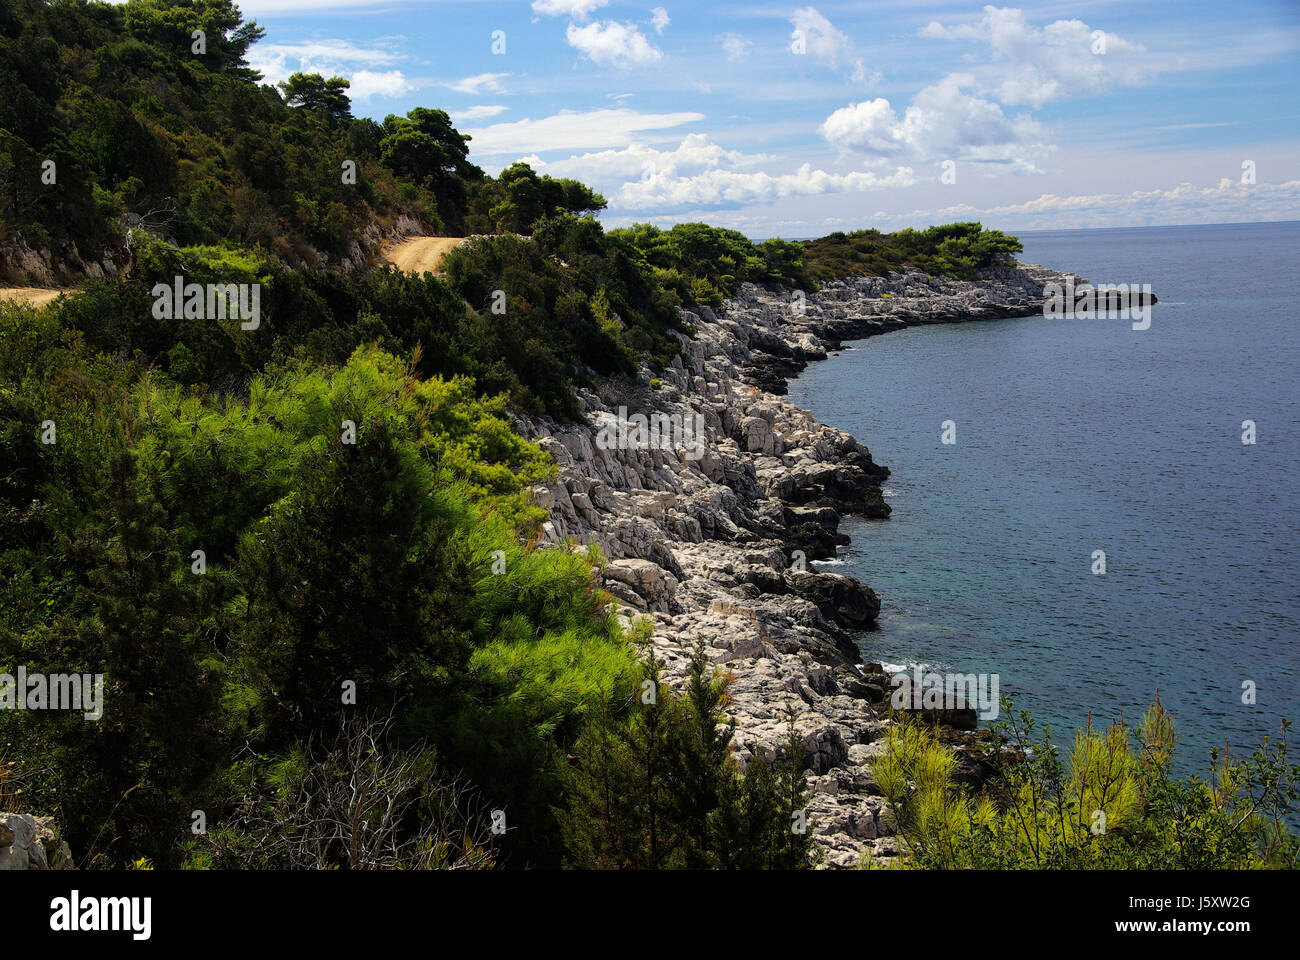 Baia sulla costa della Croazia strada acqua salata oceano mare dalmazia acqua blue tree stone Foto Stock